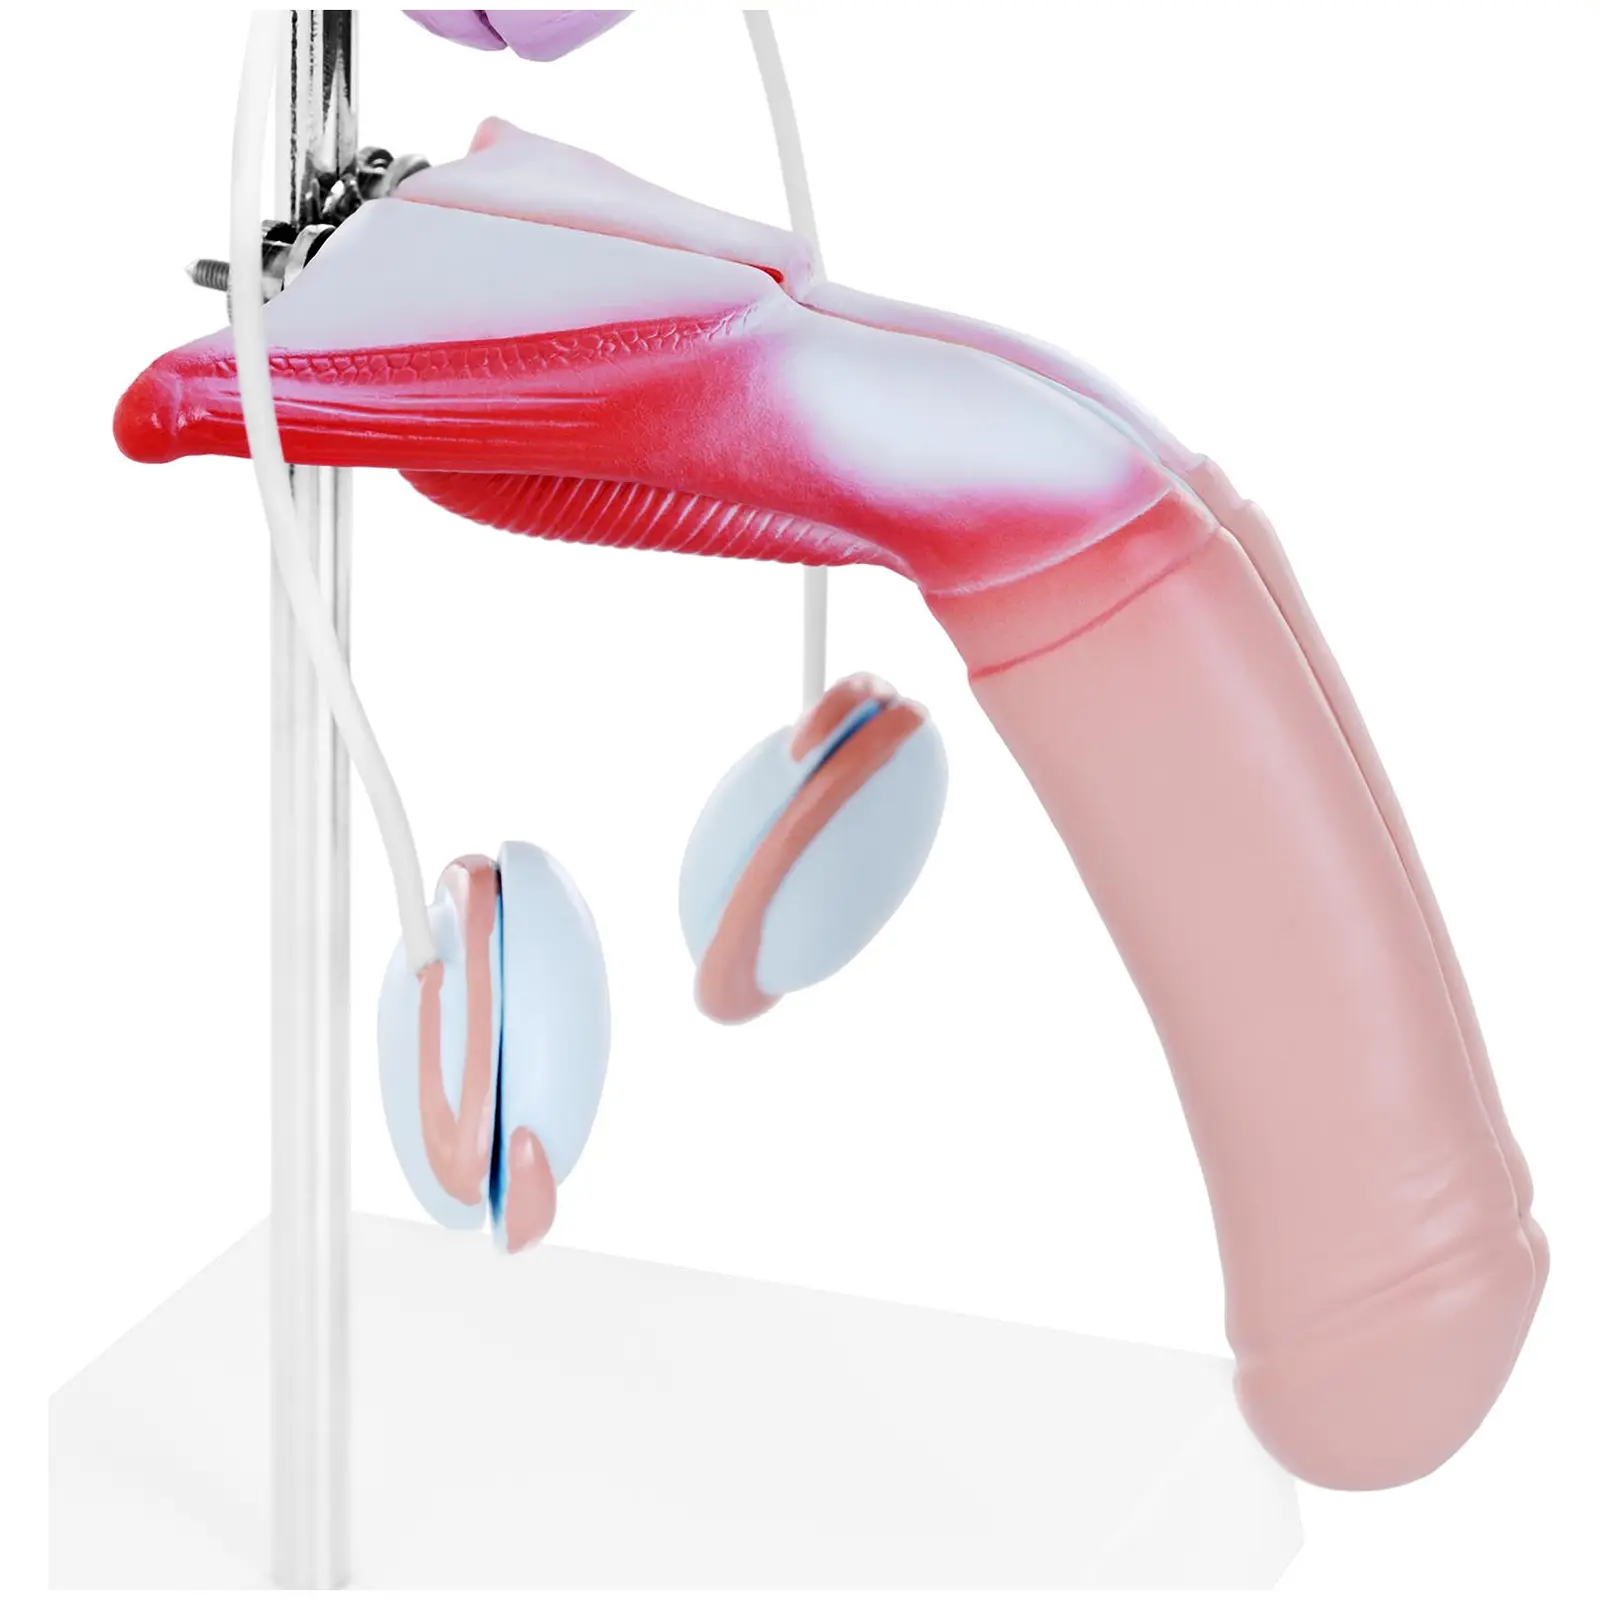 Trato genital masculino - modelo anatómico